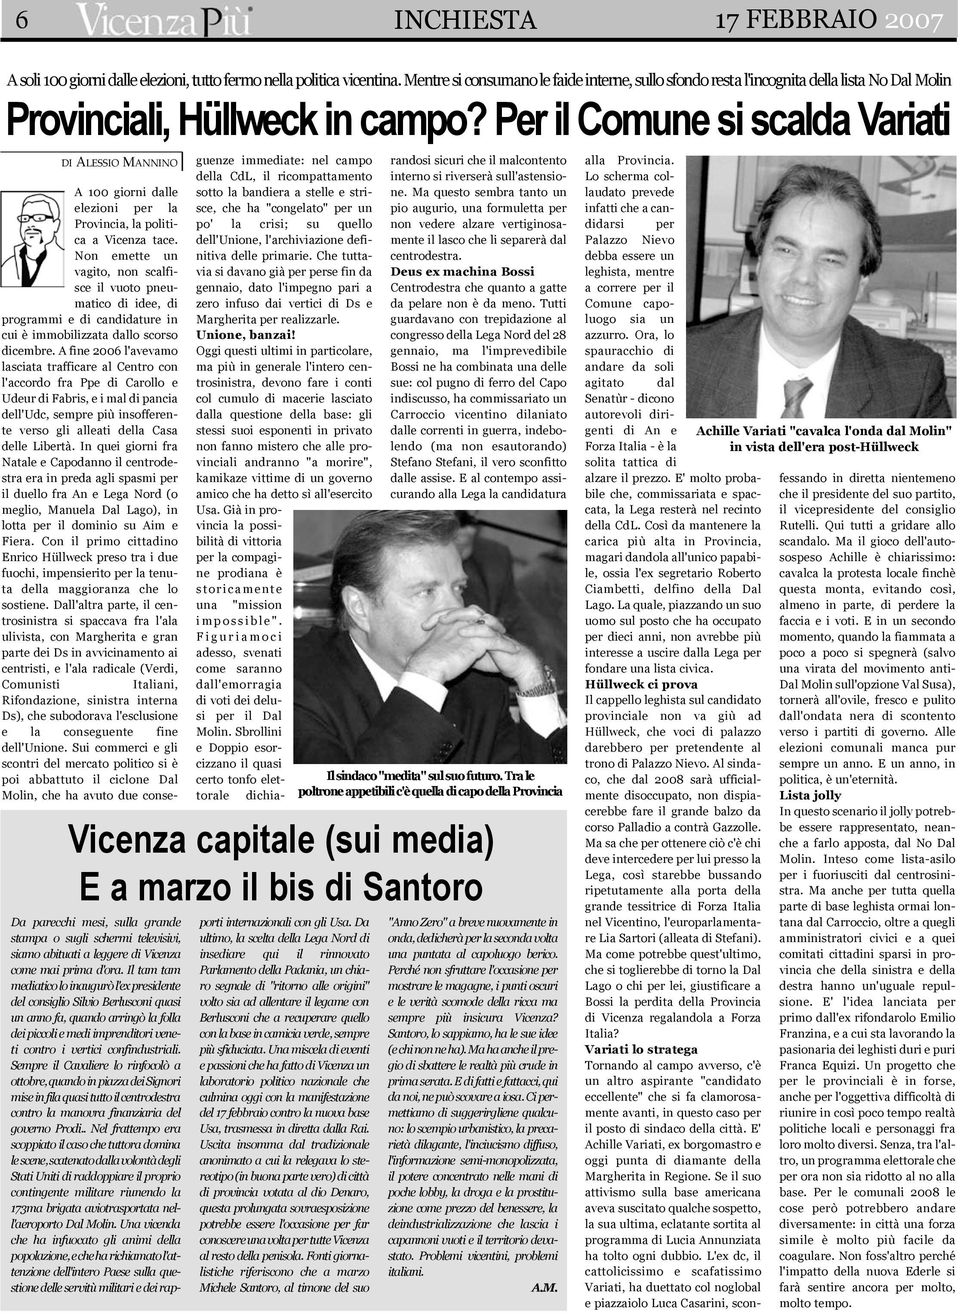 Per il Comune si scalda Variati DI ALESSIO MANNINO A 100 giorni dalle elezioni per la Provincia, la politica a Vicenza tace.